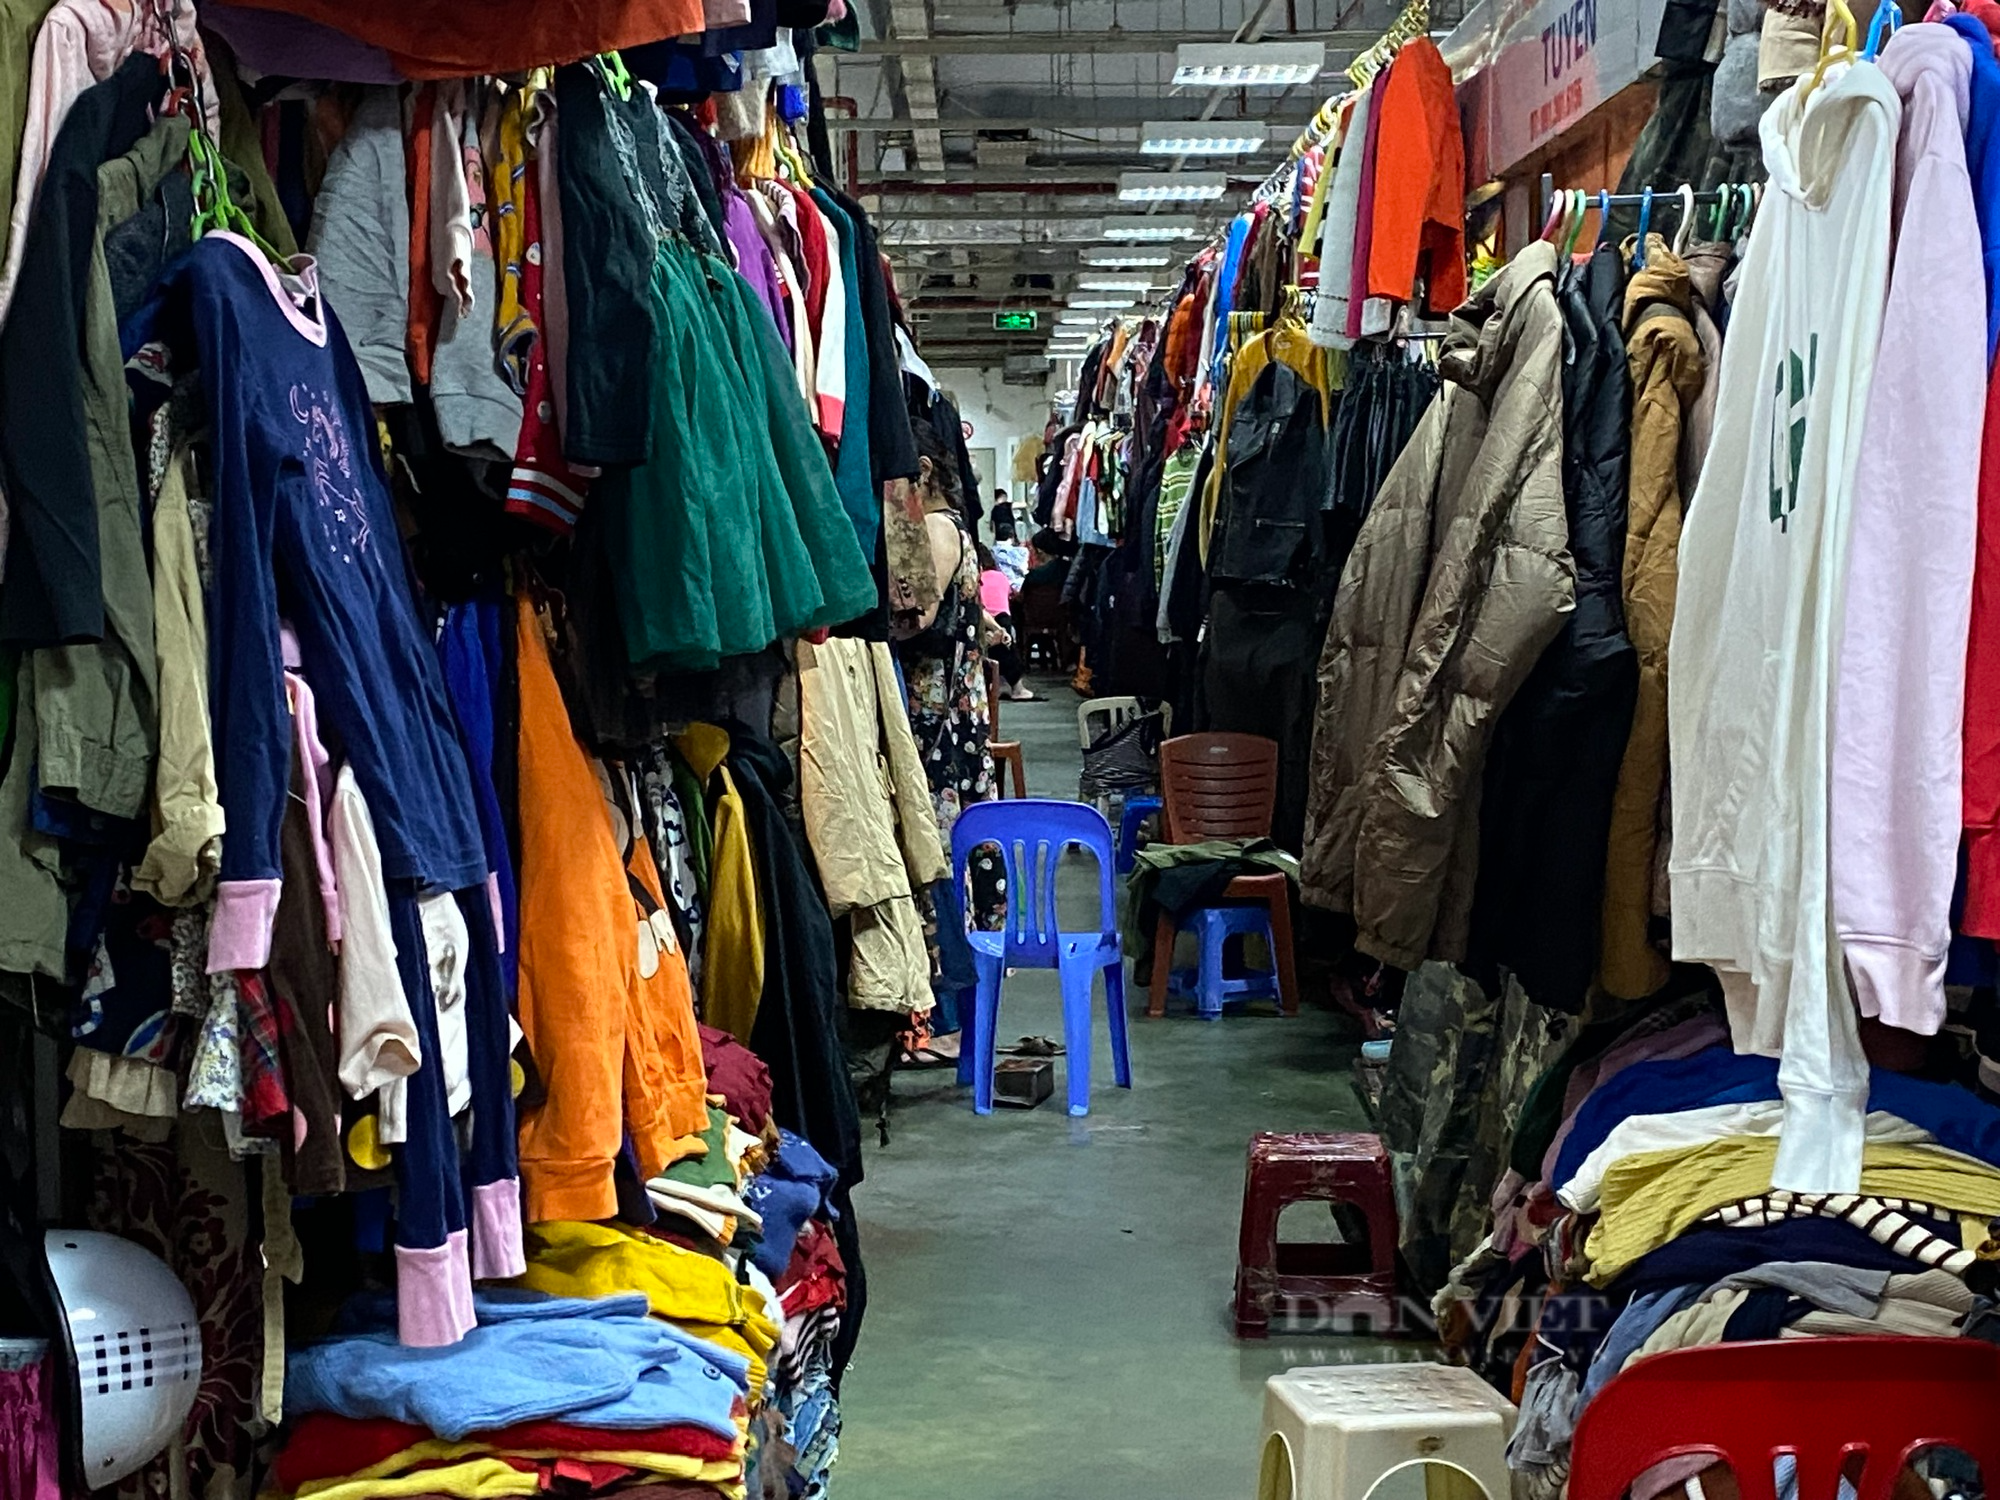 Khu chợ nổi tiếng tại trung tâm Thủ đô ế ẩm, tiểu thương ngồi đan len, lướt điện thoại - Ảnh 3.